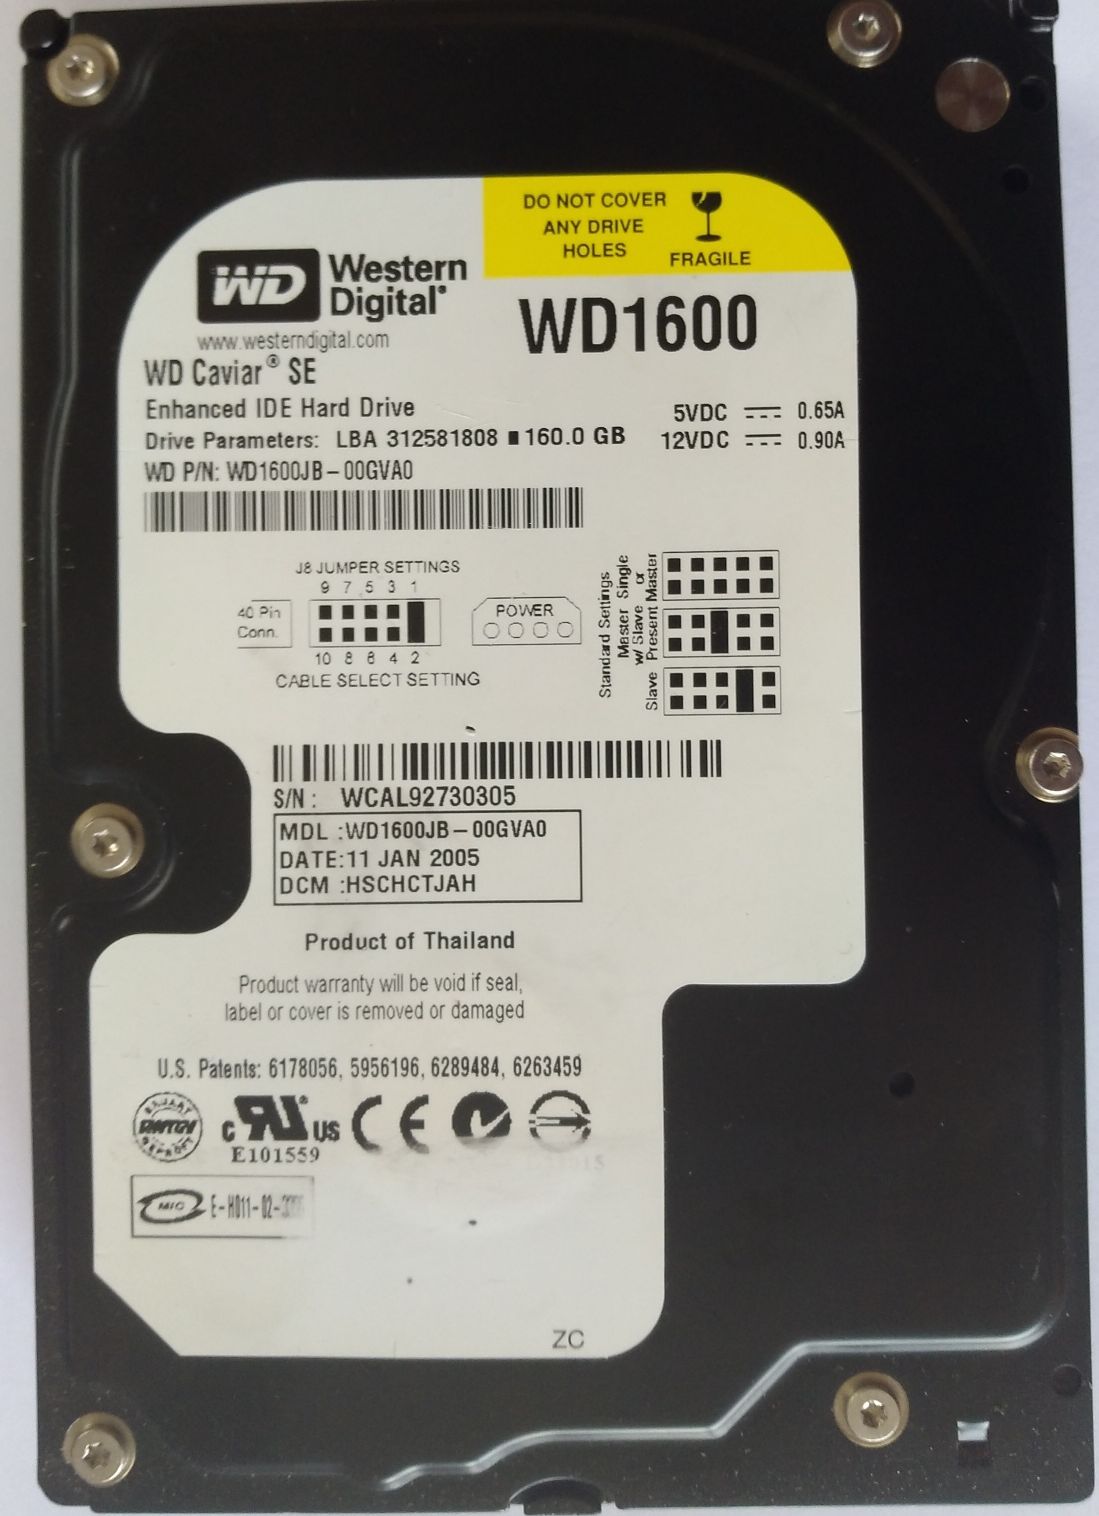 HDD PATA/100 3.5" 160GB / Western Digital Caviar SE (WD1600JB)